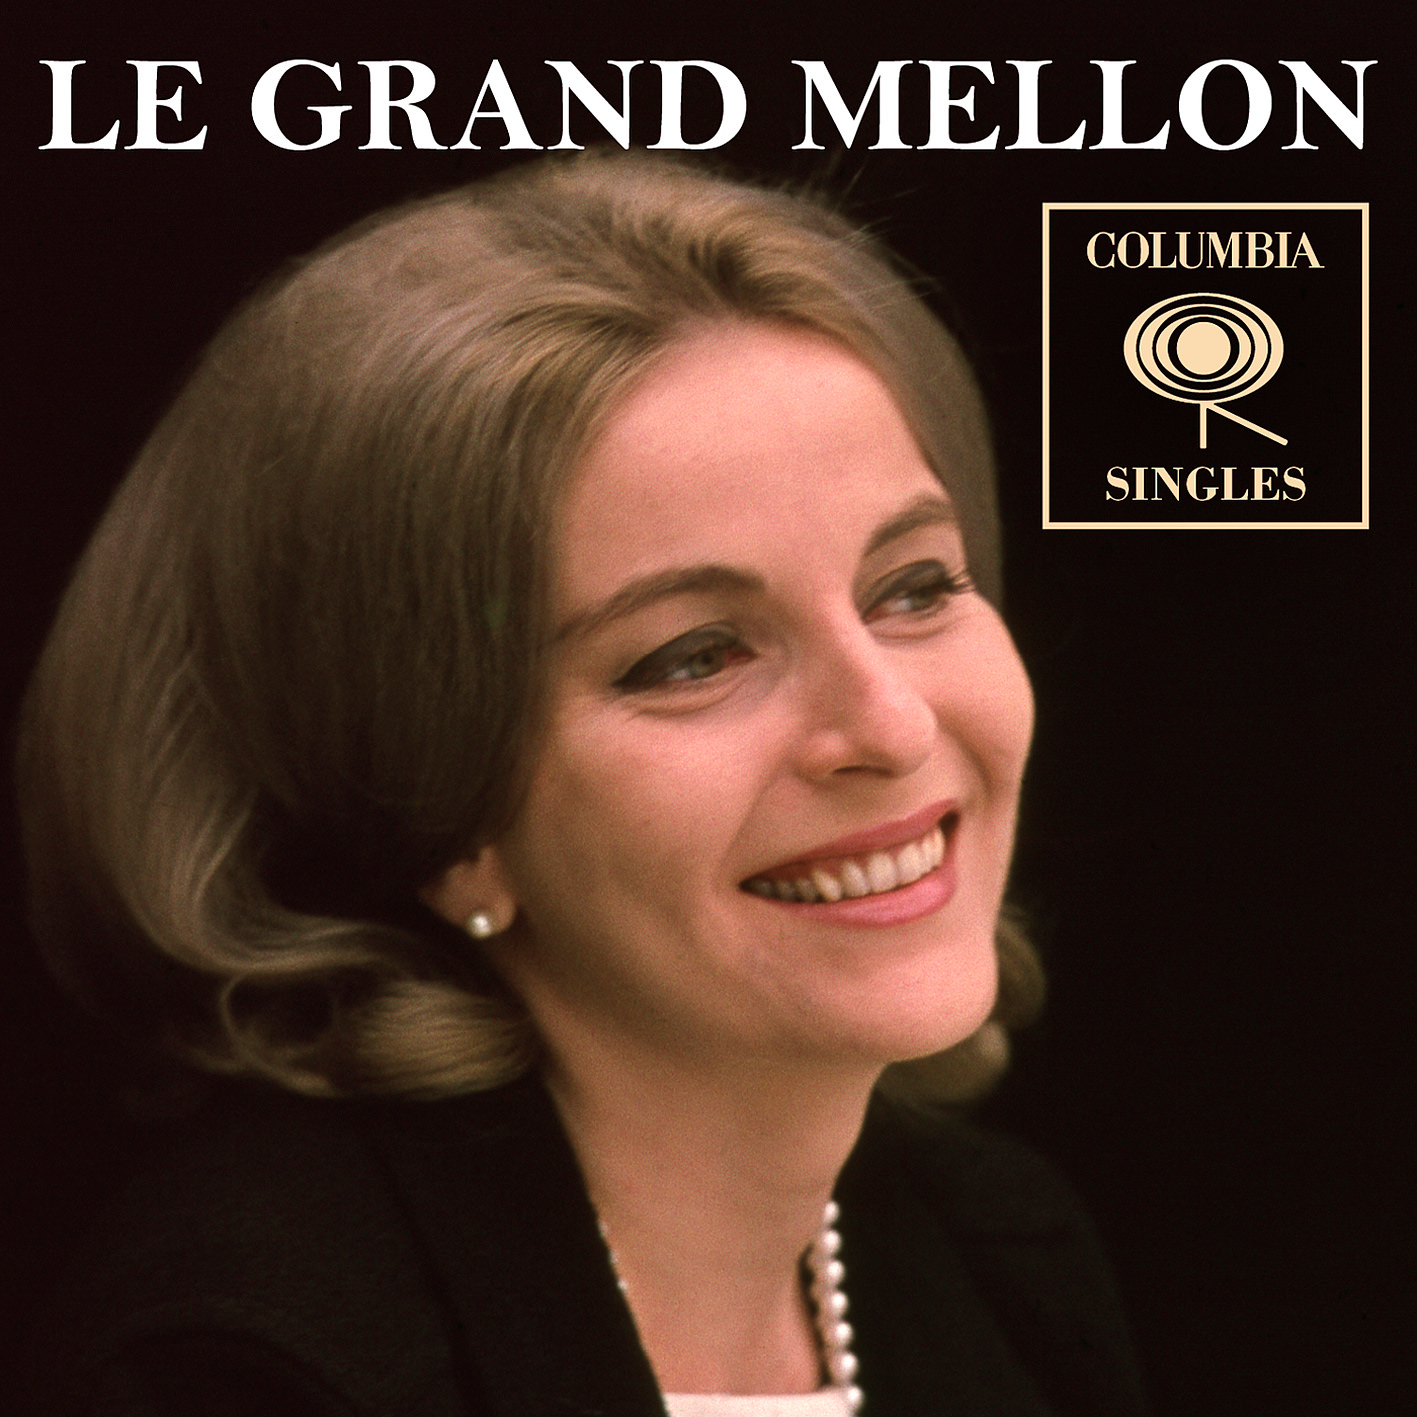 Le Grand Mellon - Columbia Singles (2017) [AcousticSounds FLAC 24bit/192kHz]